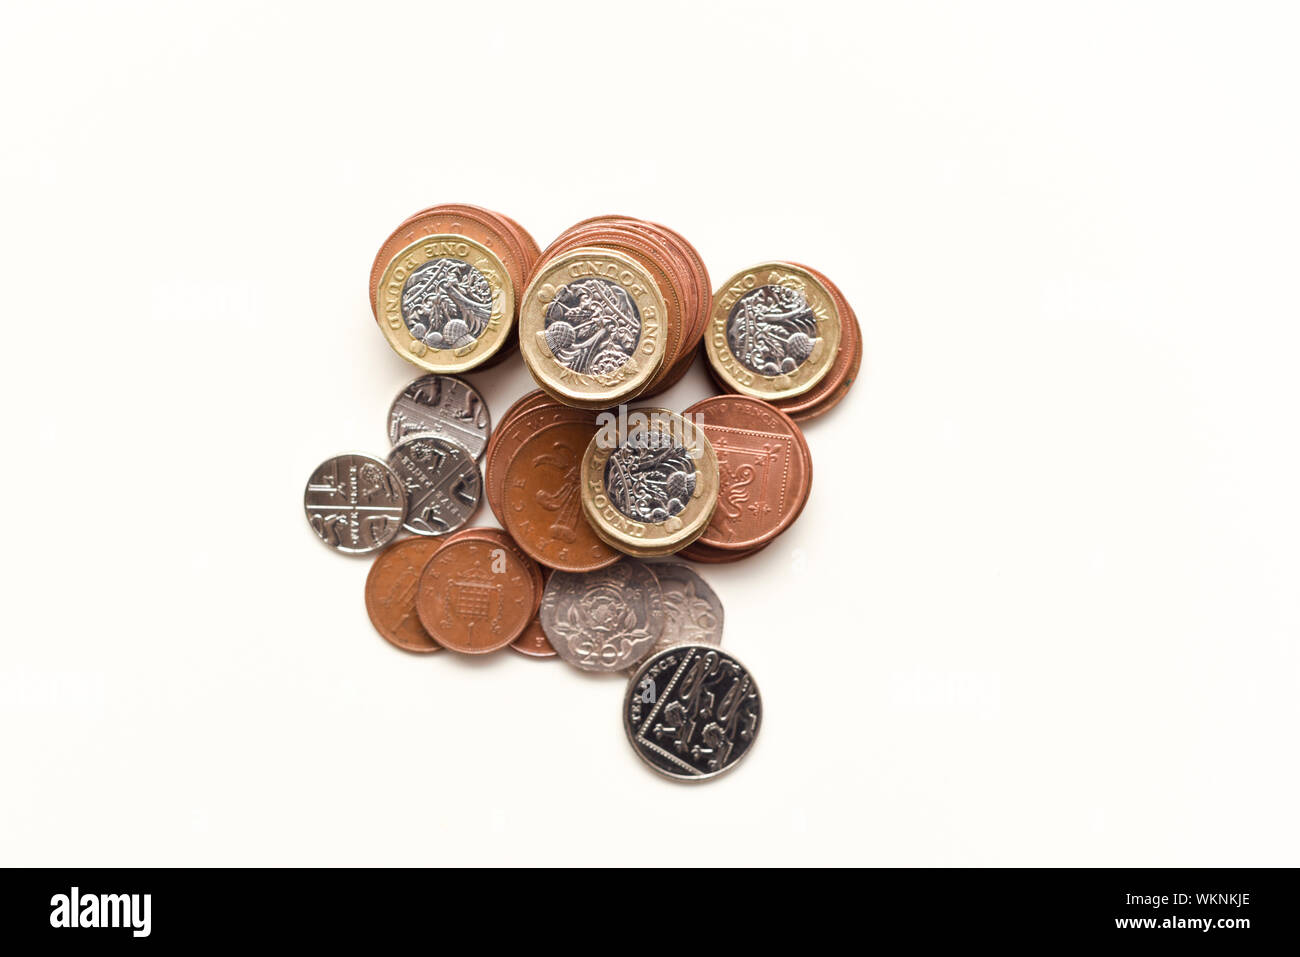 Münzen auf weiße britische Währung, die britische Wirtschaft und Märkte isoliert Stockfoto